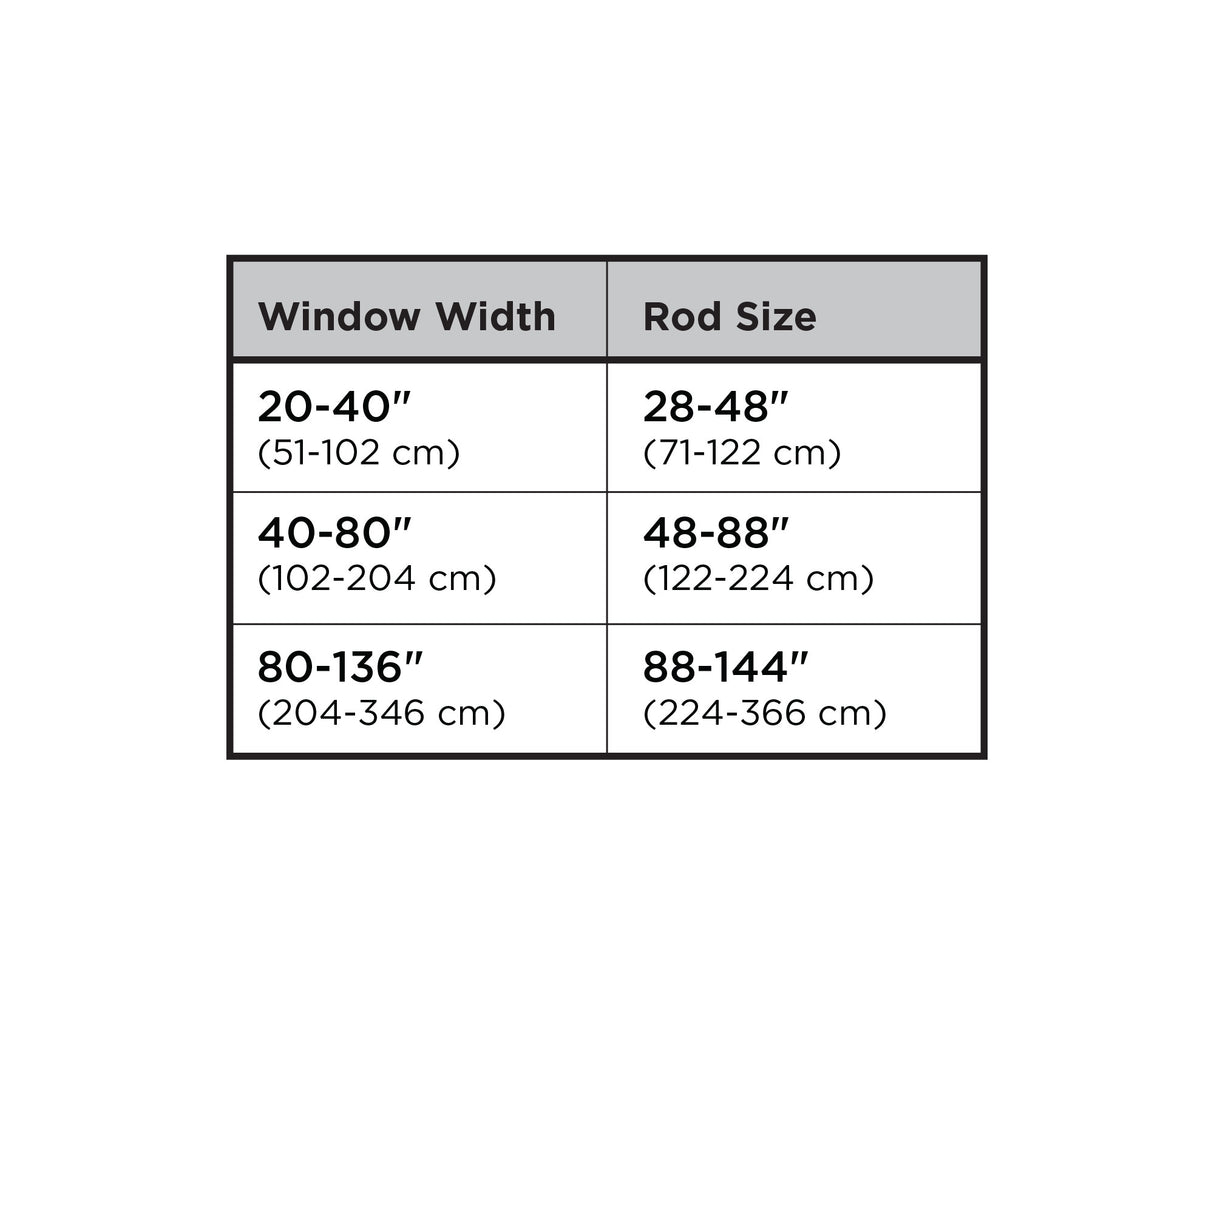 Double Curtain Rods | color: Matte-Nickel | size: 48-88" (122-224 cm) | diameter: 3/4" (1.9 cm)